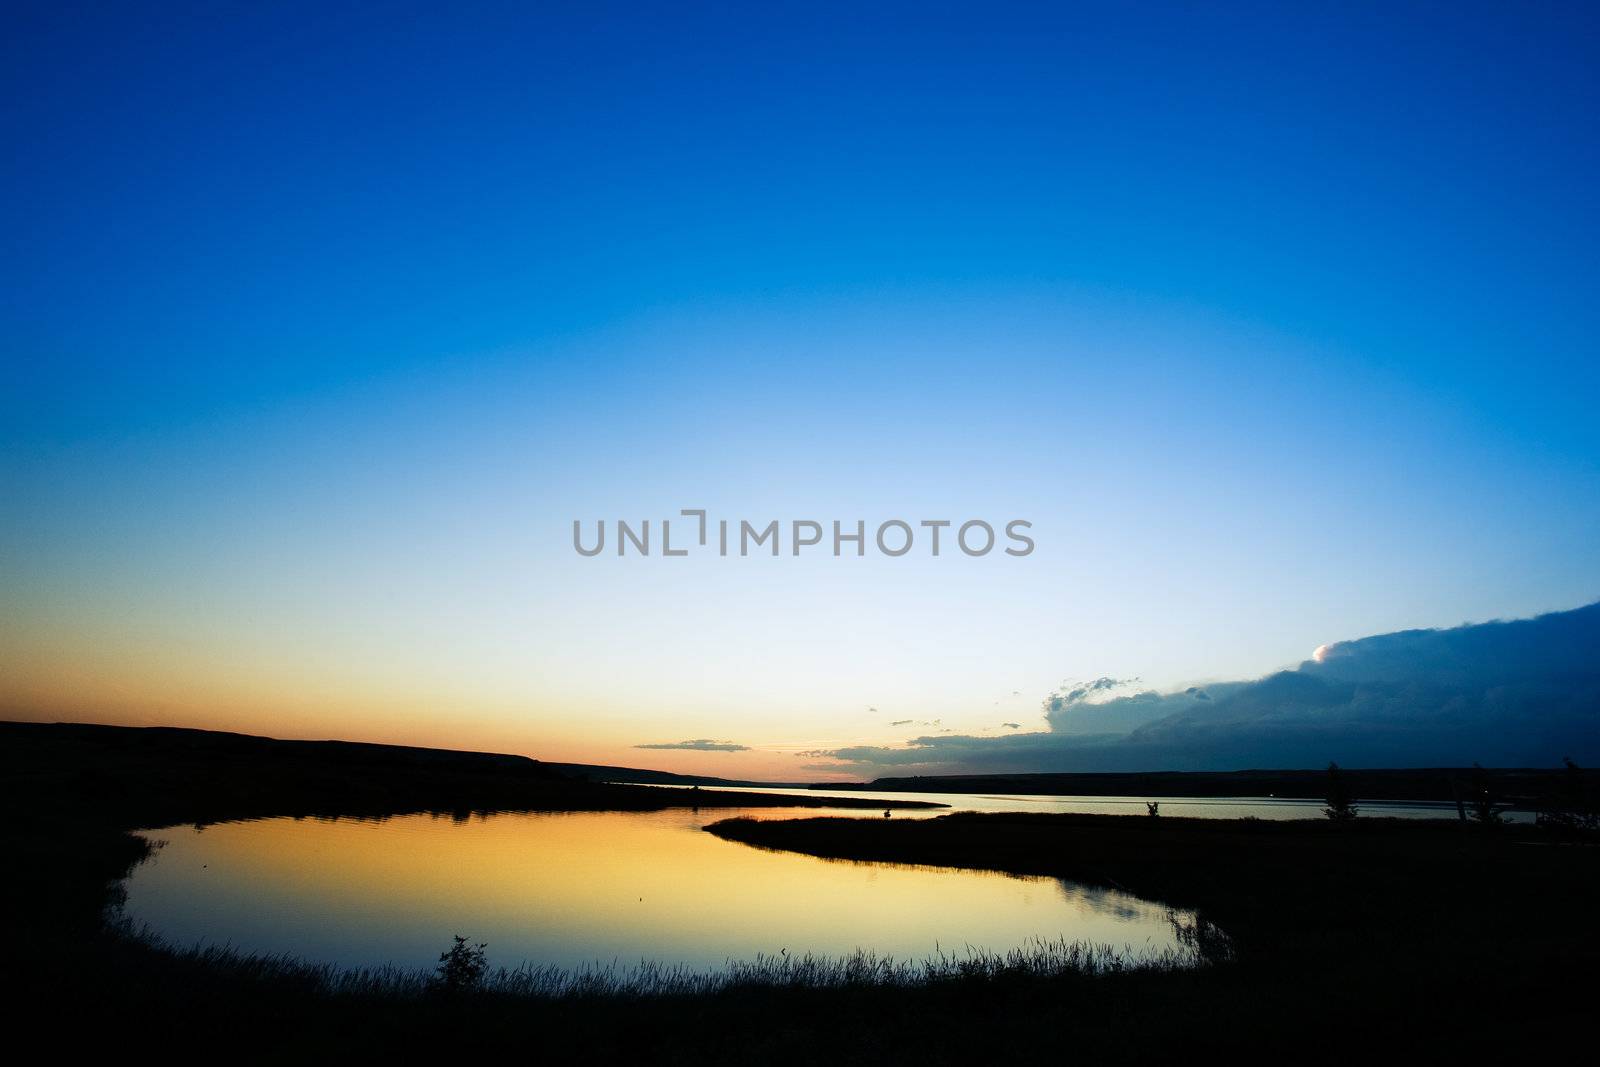 A sunset on a lake in rural saskatchewan